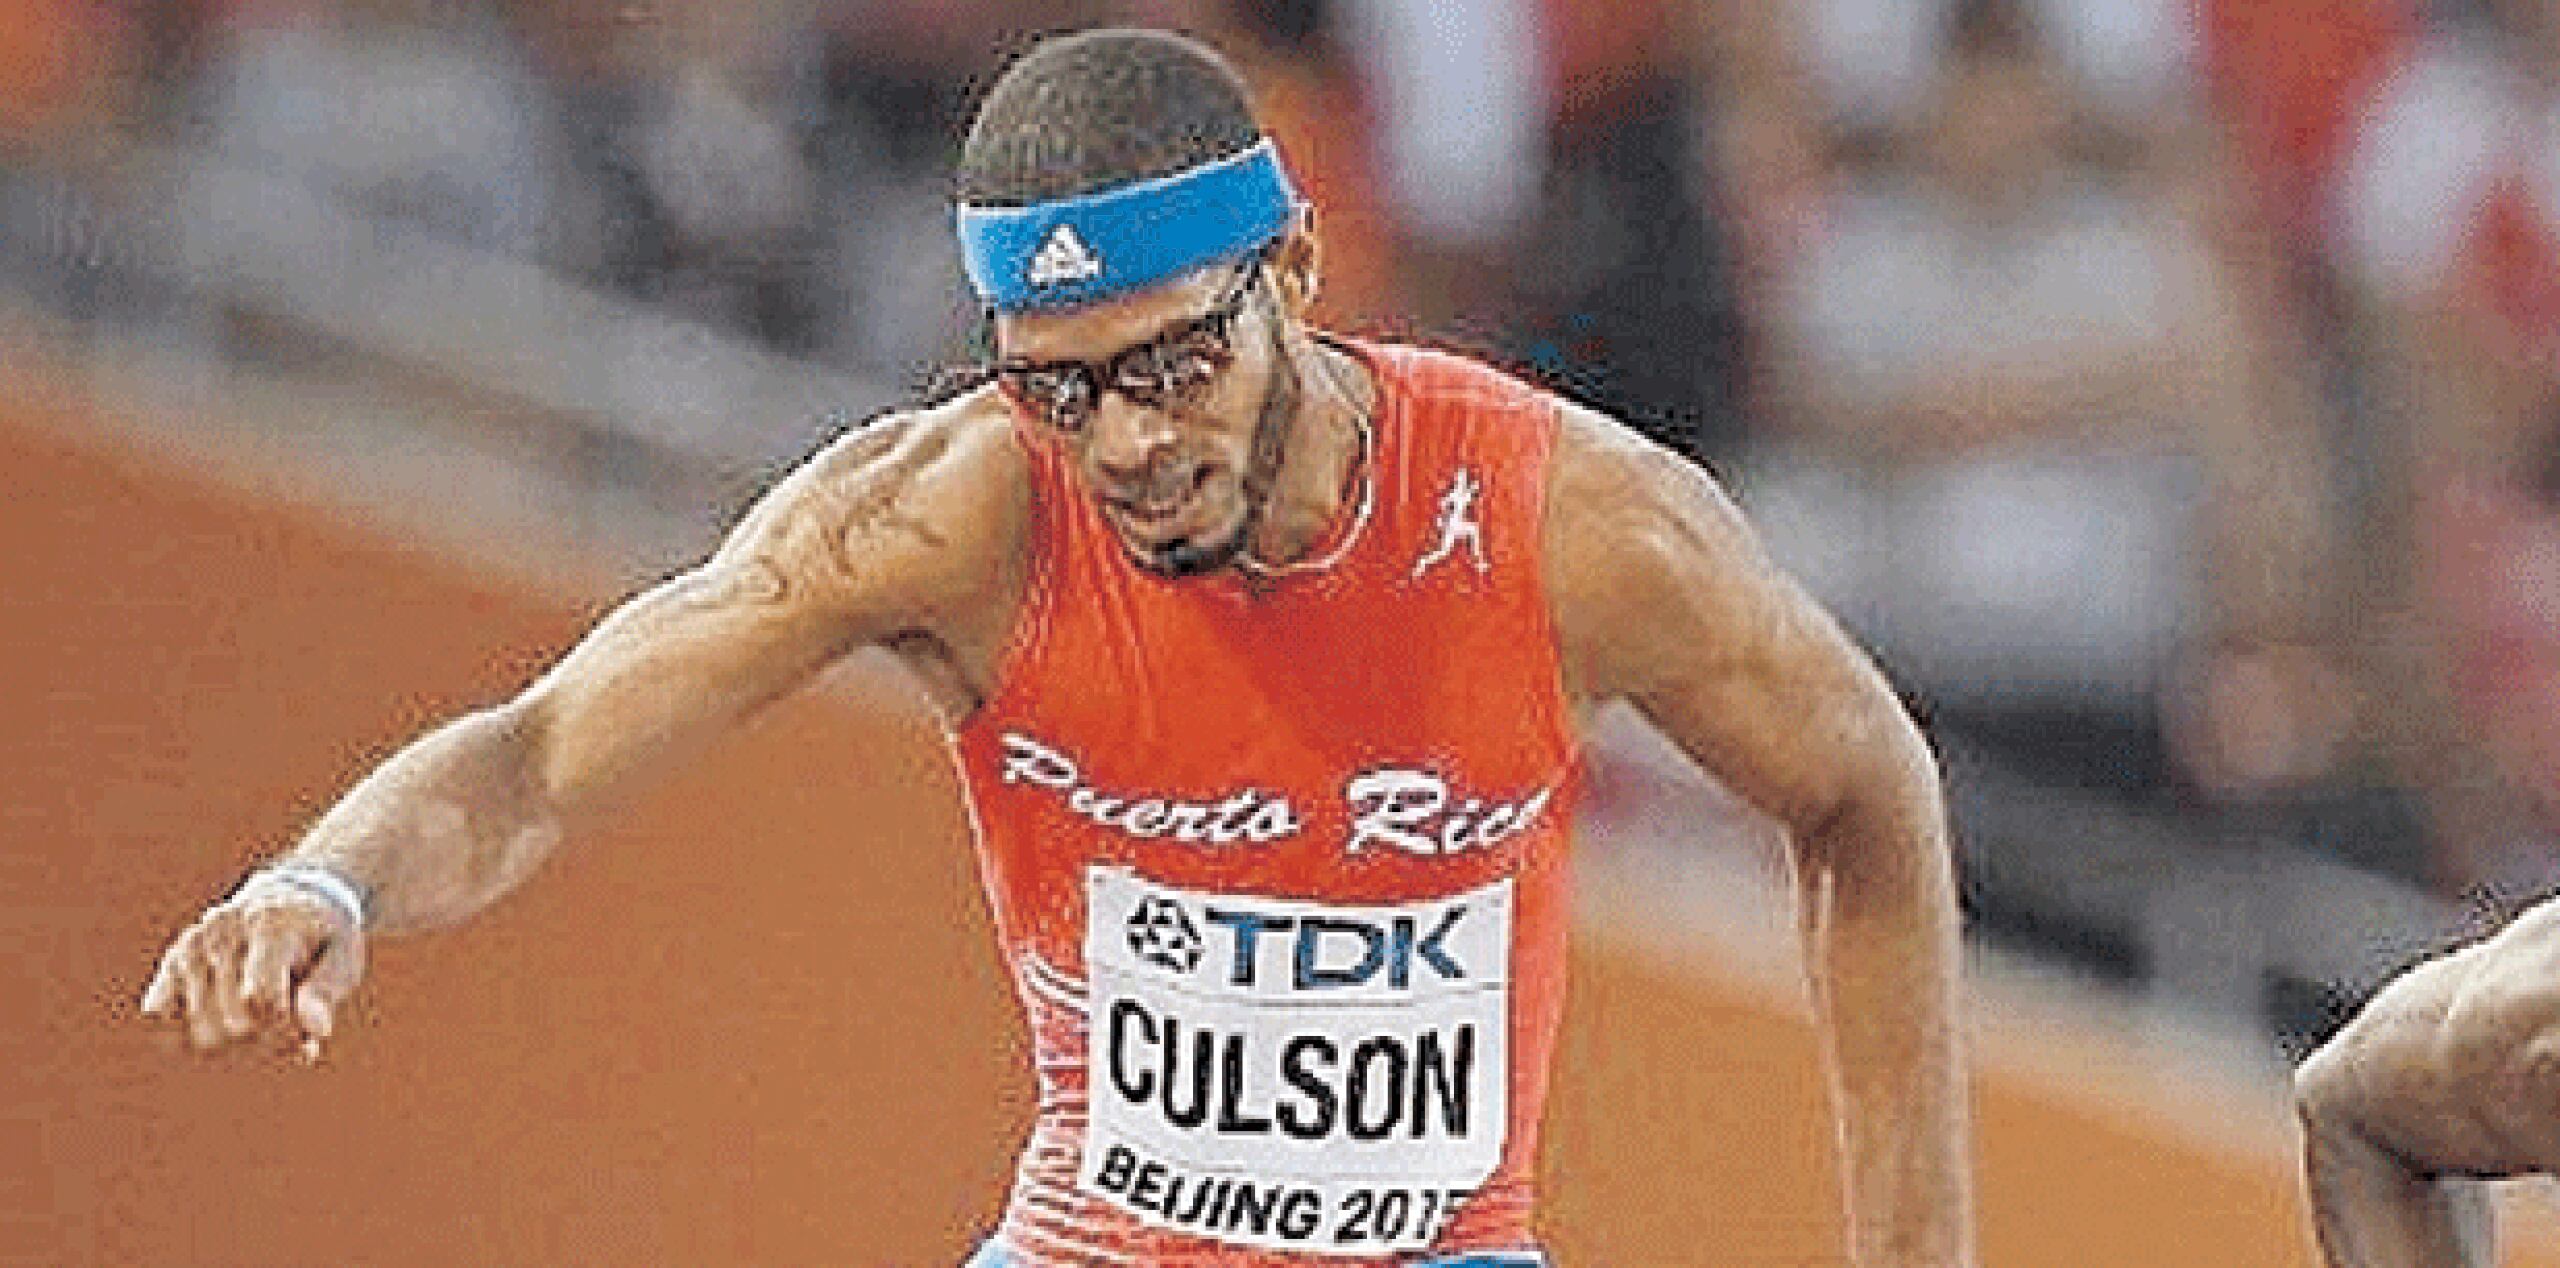 El Ponce Grand Prix que se celebra desde el 2007 en el estadio Francisco “Paquito” Montaner, fue testigo del mejor tiempo que ha hecho el atleta puertorriqueño Javier Culson. (Archivo)